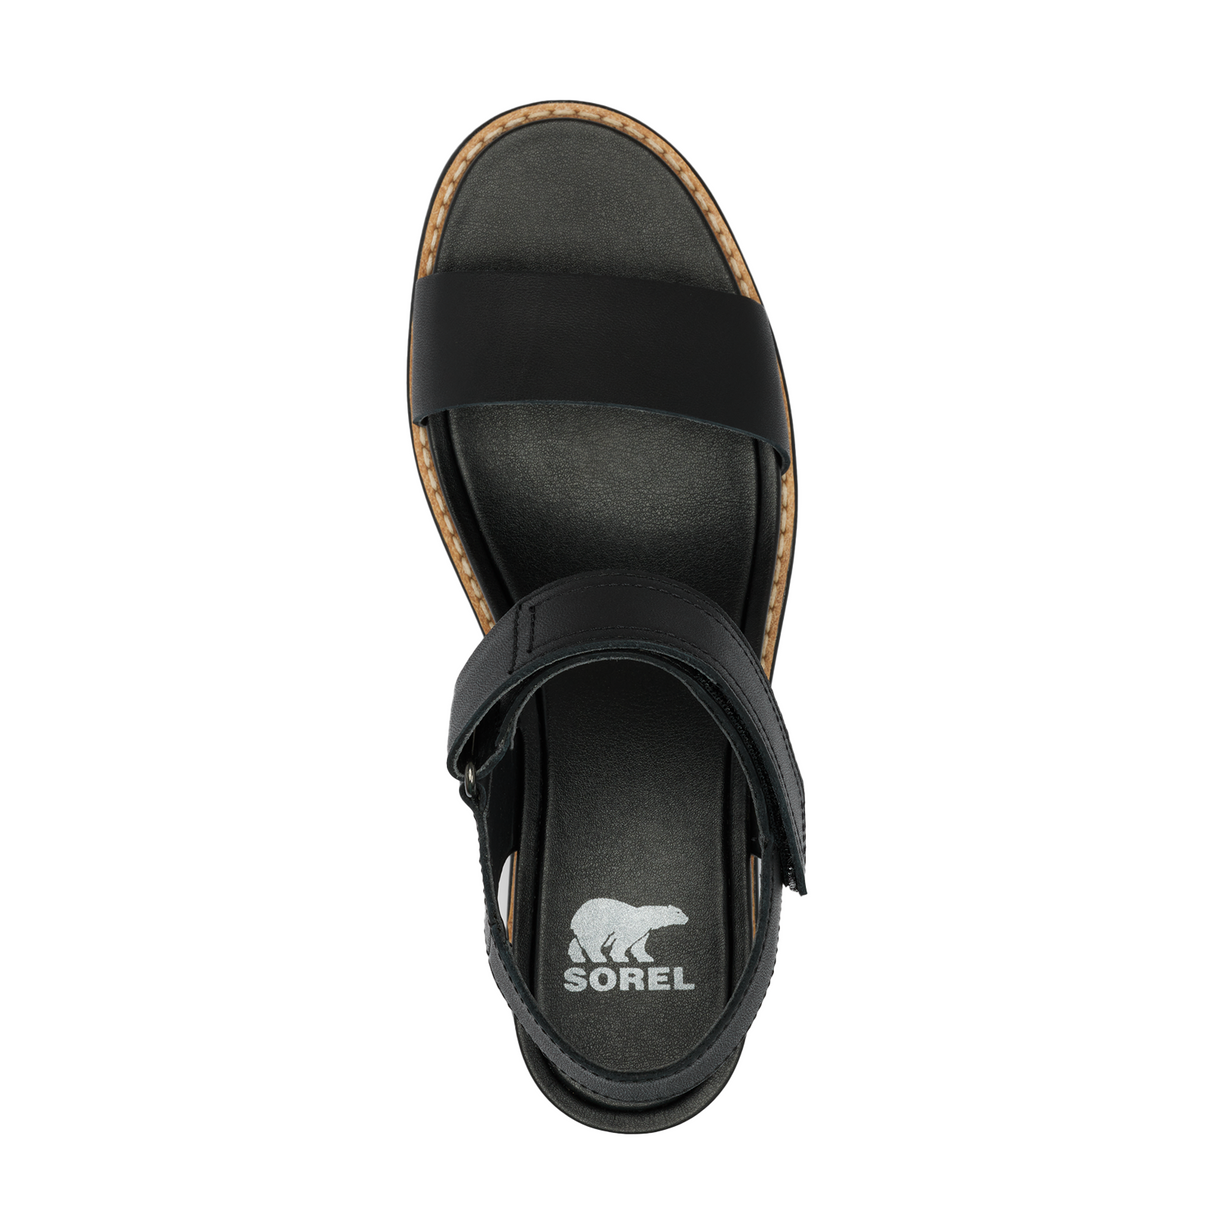 Sorel Joanie IV Y Strap Wedge Sandal (Women) - Black/Sea Salt Sandals - Heel/Wedge - The Heel Shoe Fitters